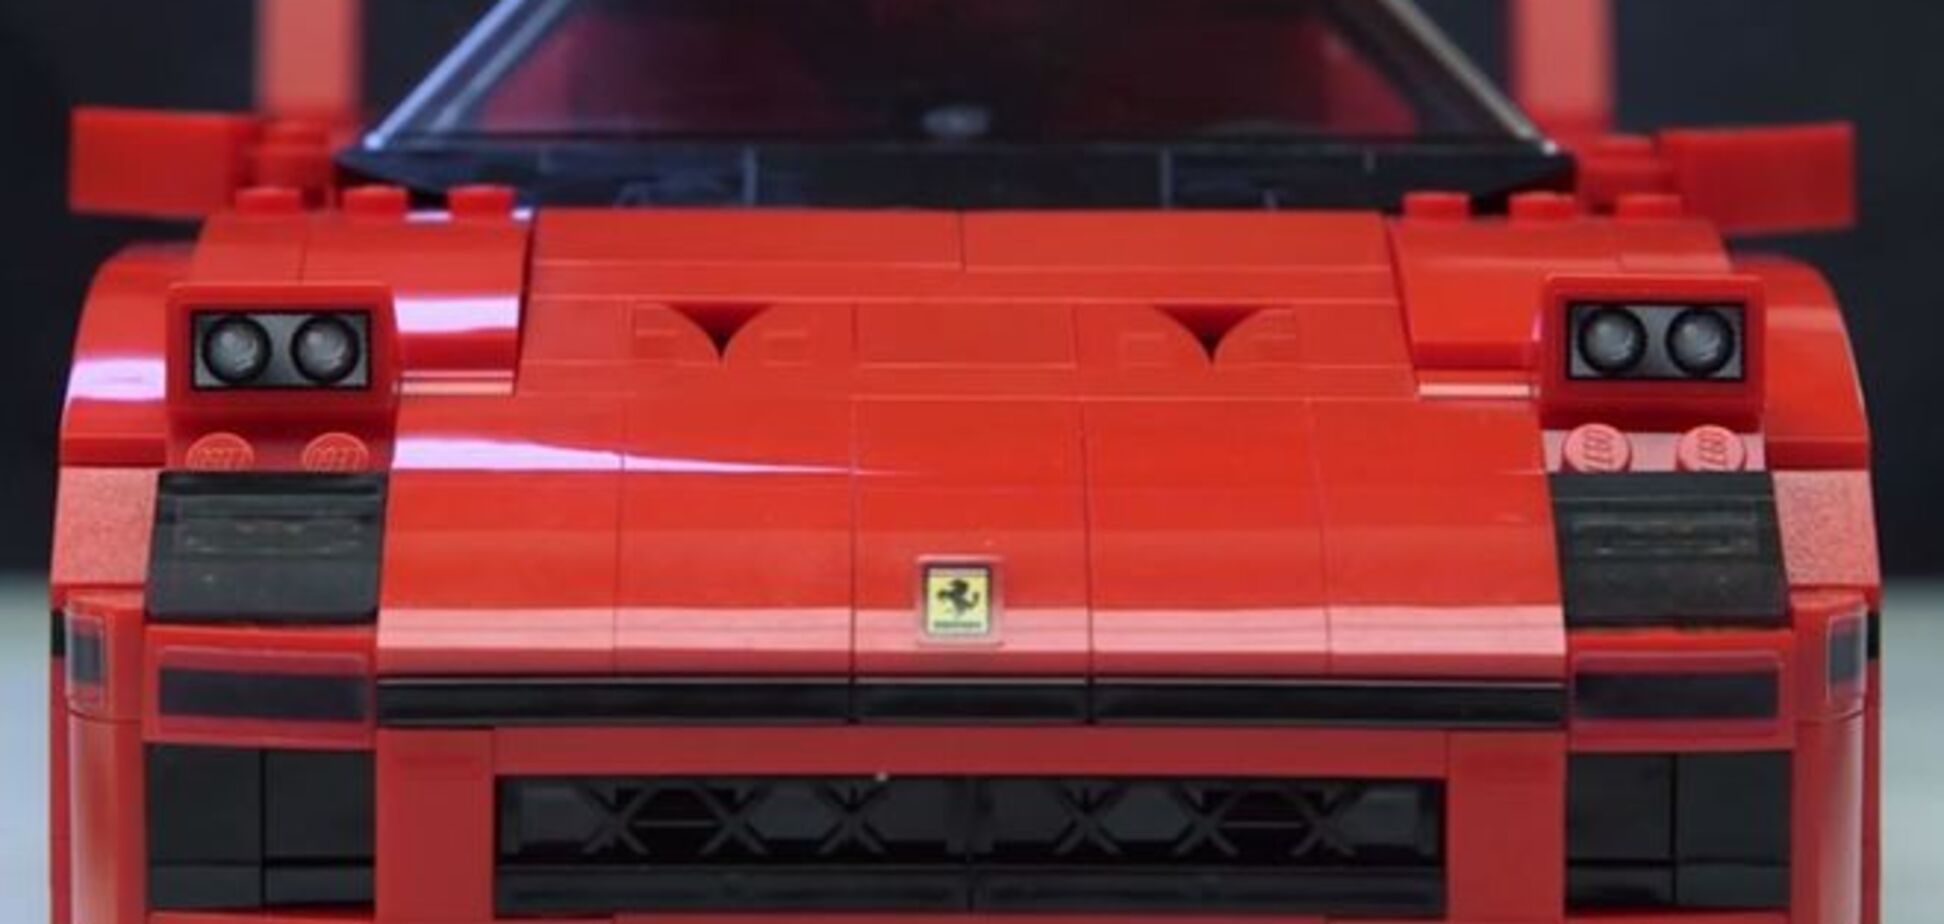 За 100 евро теперь можно собрать собственный Ferrari F40: видеопособие